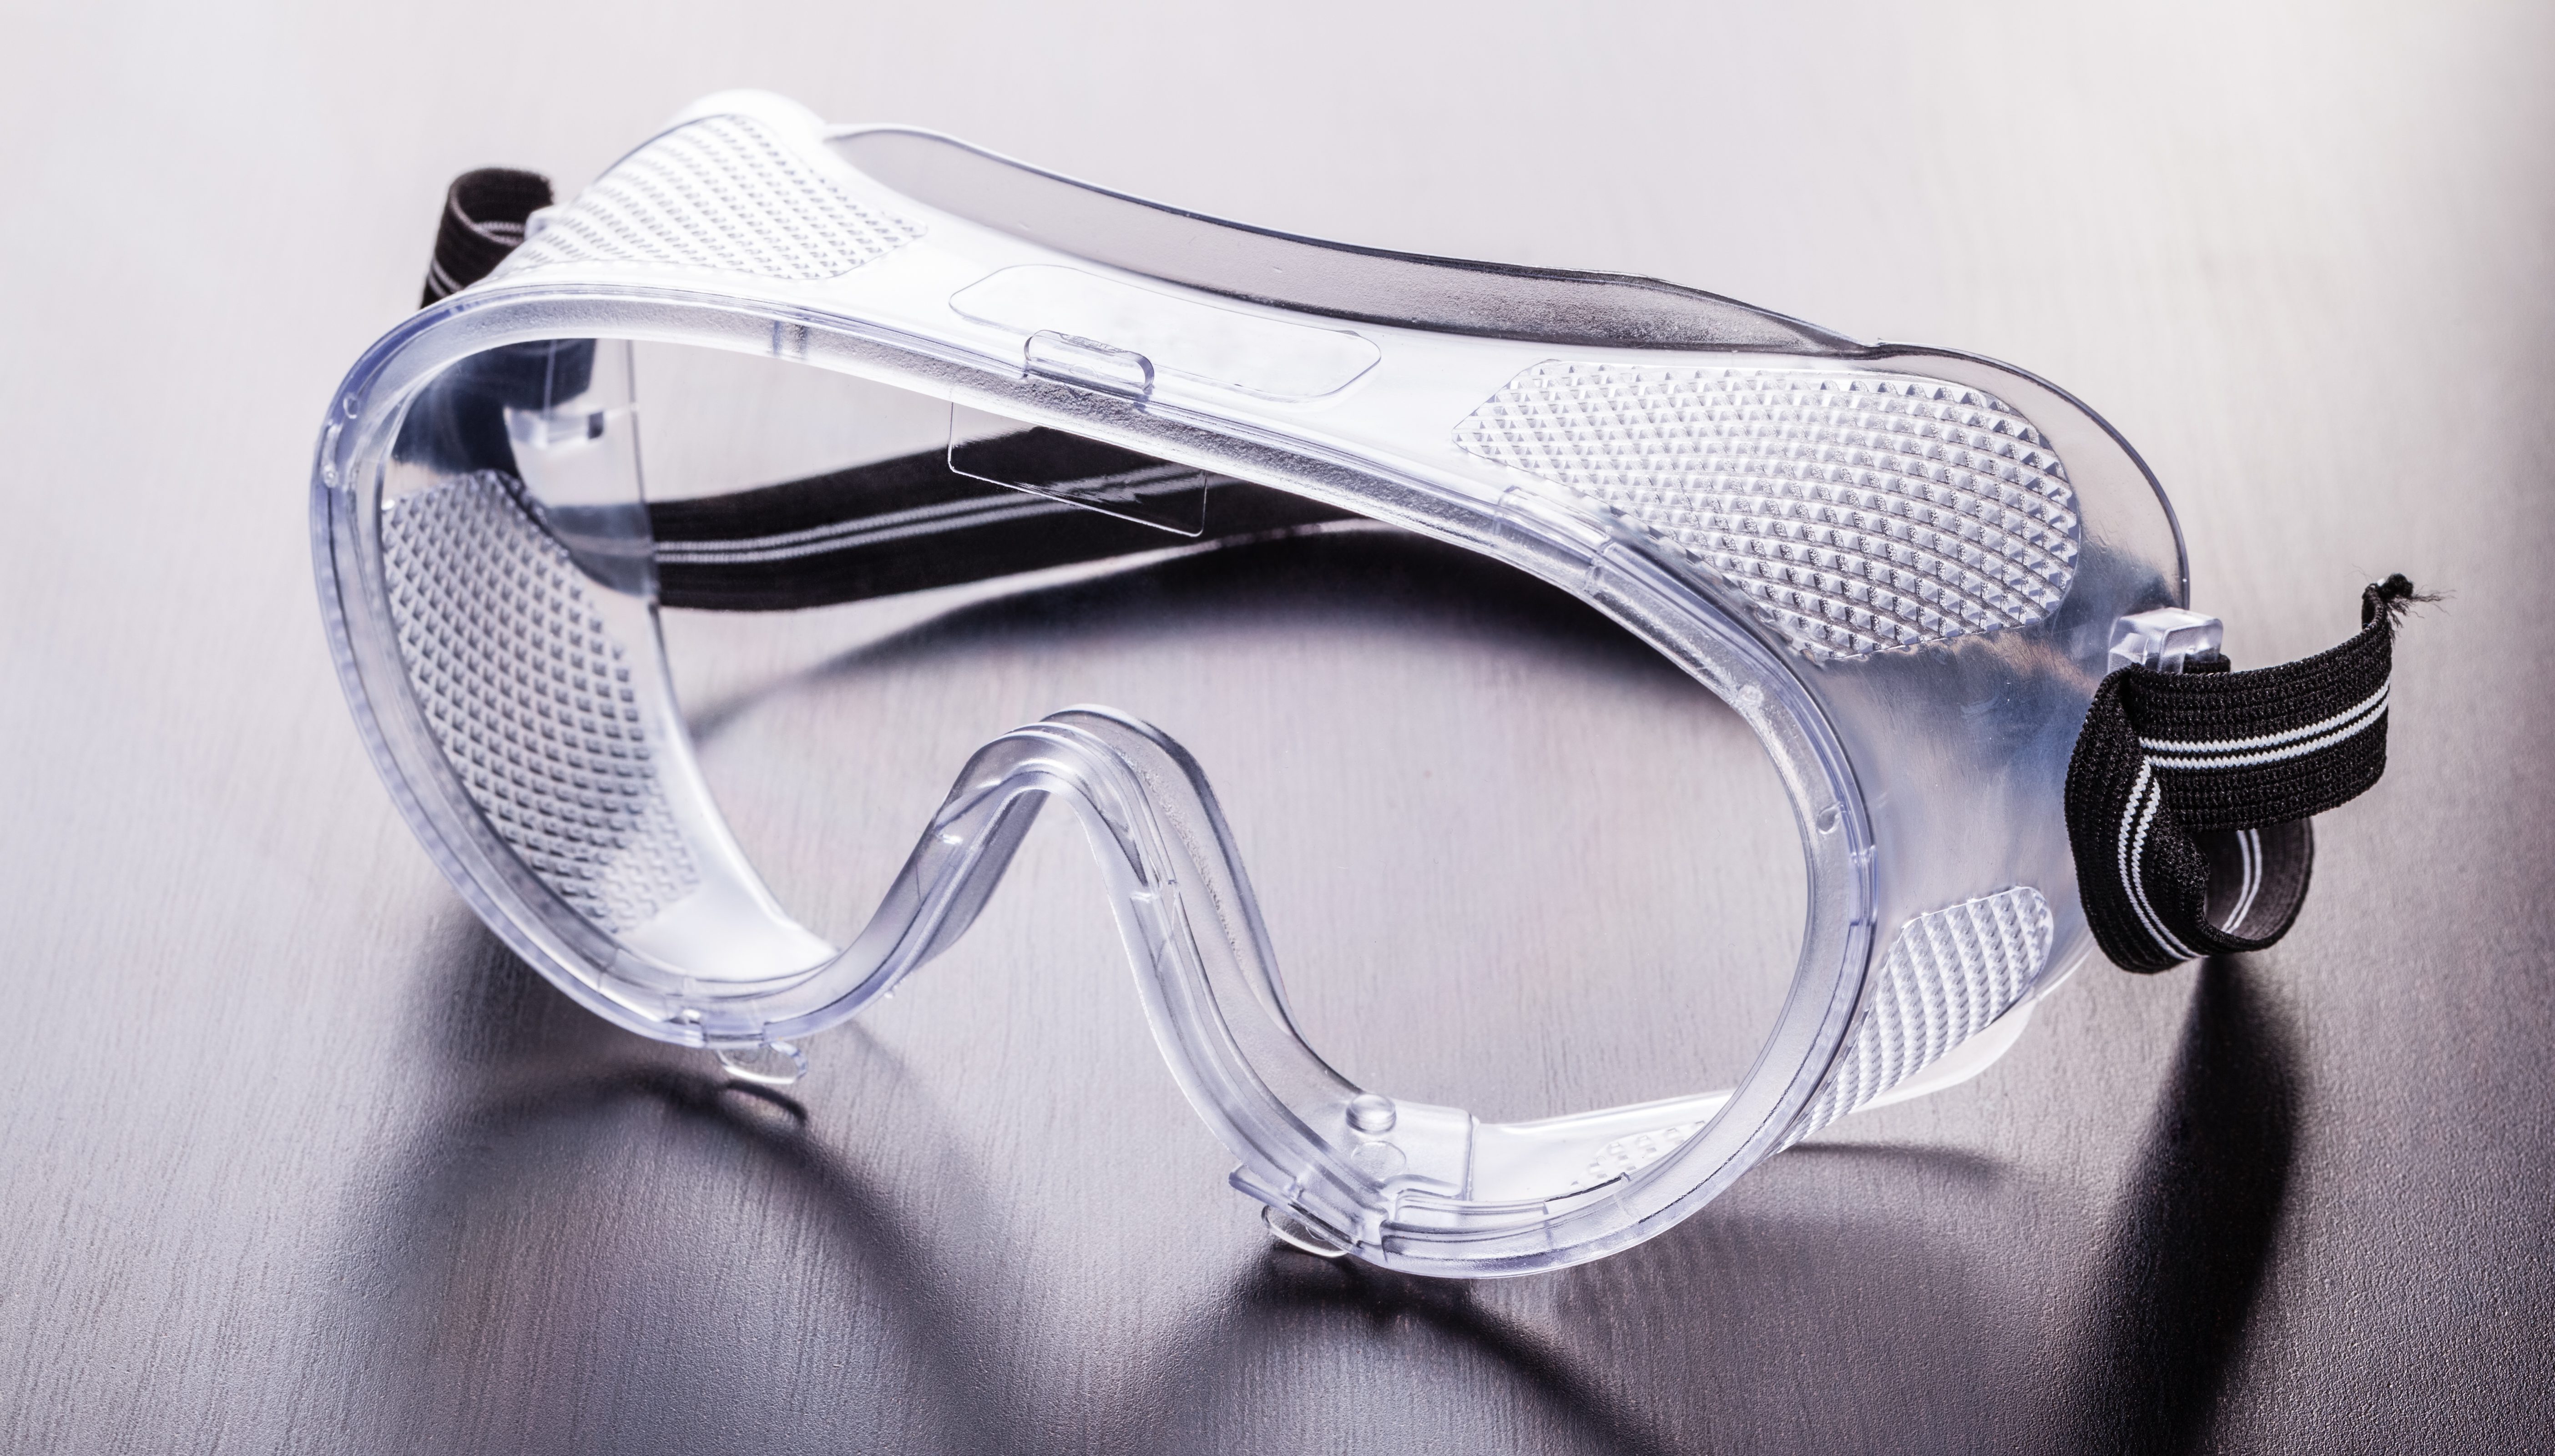 blanco Protección de los ojos Gafas de seguridad Goggles Gafas de viento y anti polvo herramienta de cocina cebolla